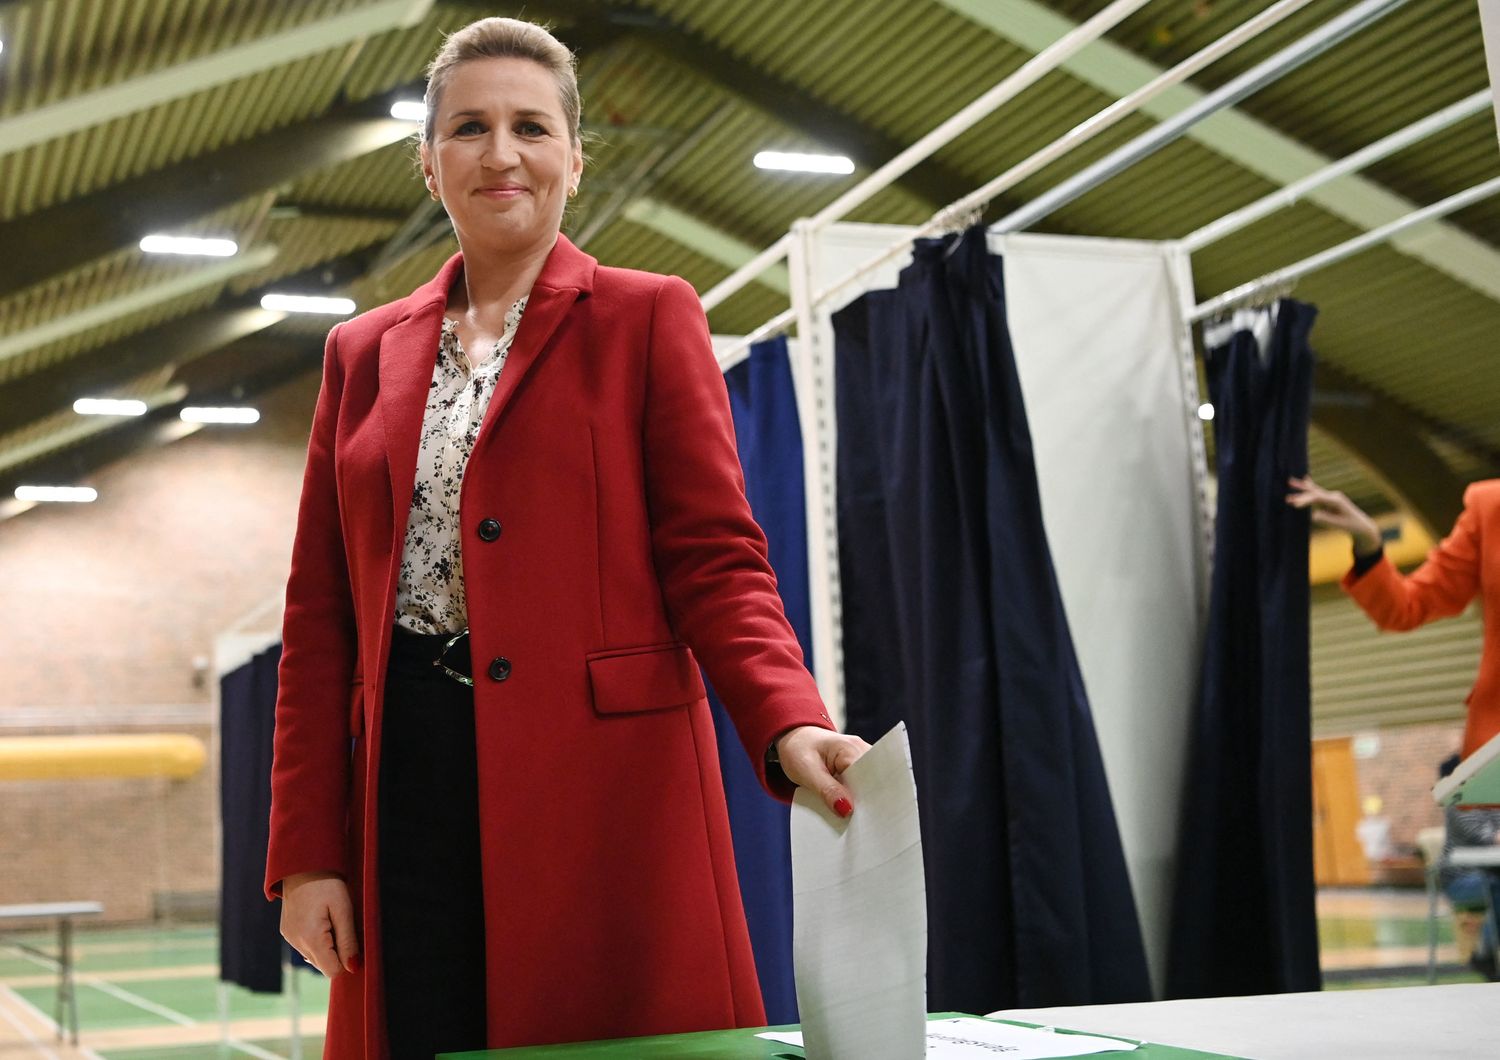 La premier Mette Frederiksen al voto